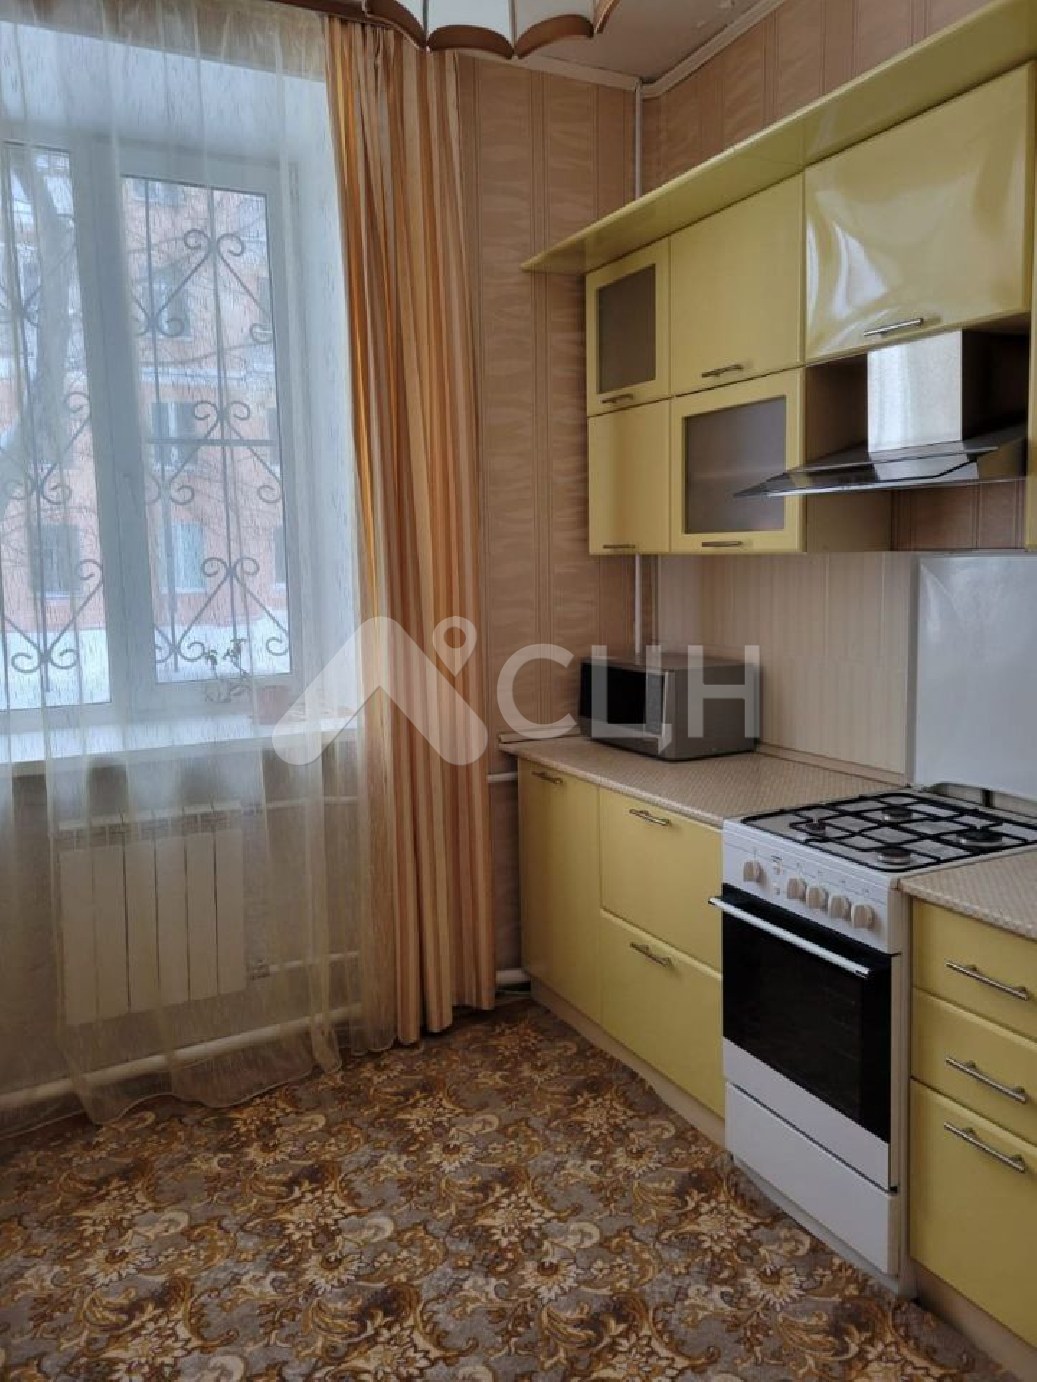 Цены на жилье в Сарове
: Г. Саров, проспект Ленина, 8, 3-комн квартира, этаж 1 из 4, продажа.